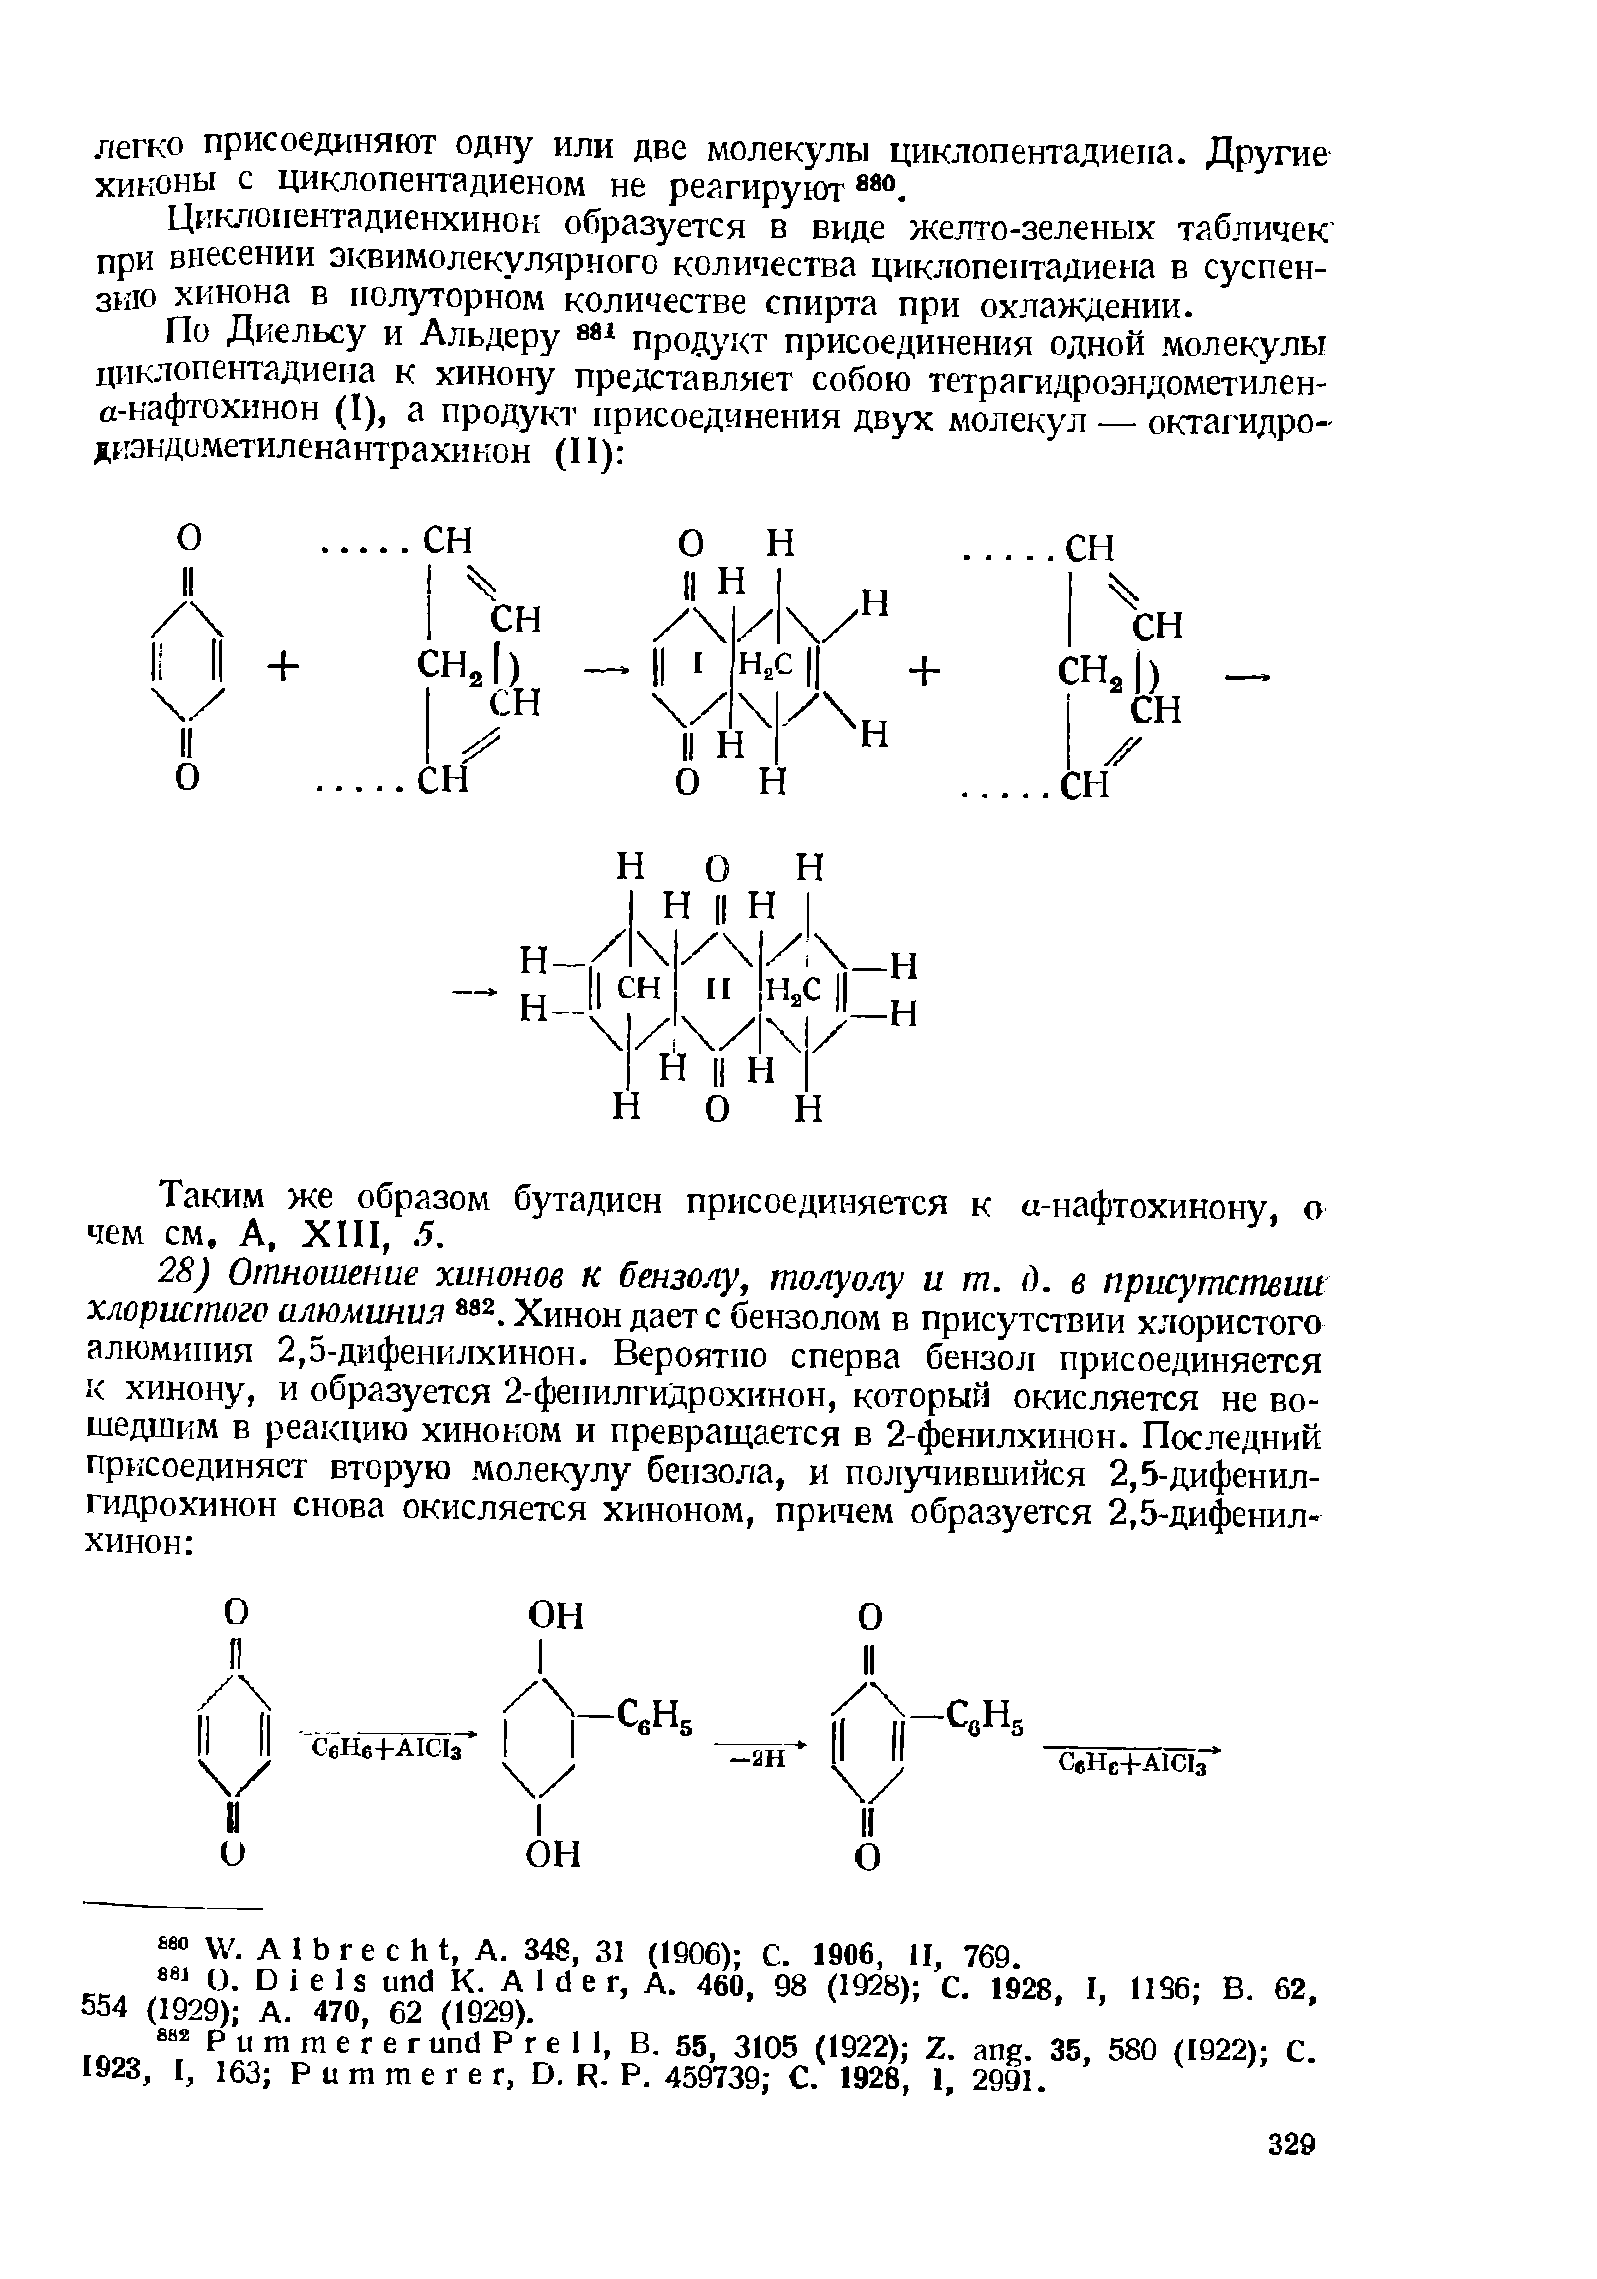 Таким же образом бутадиен присоединяется к а-нафтохинону, о чем см. А, ХП1,. 5.